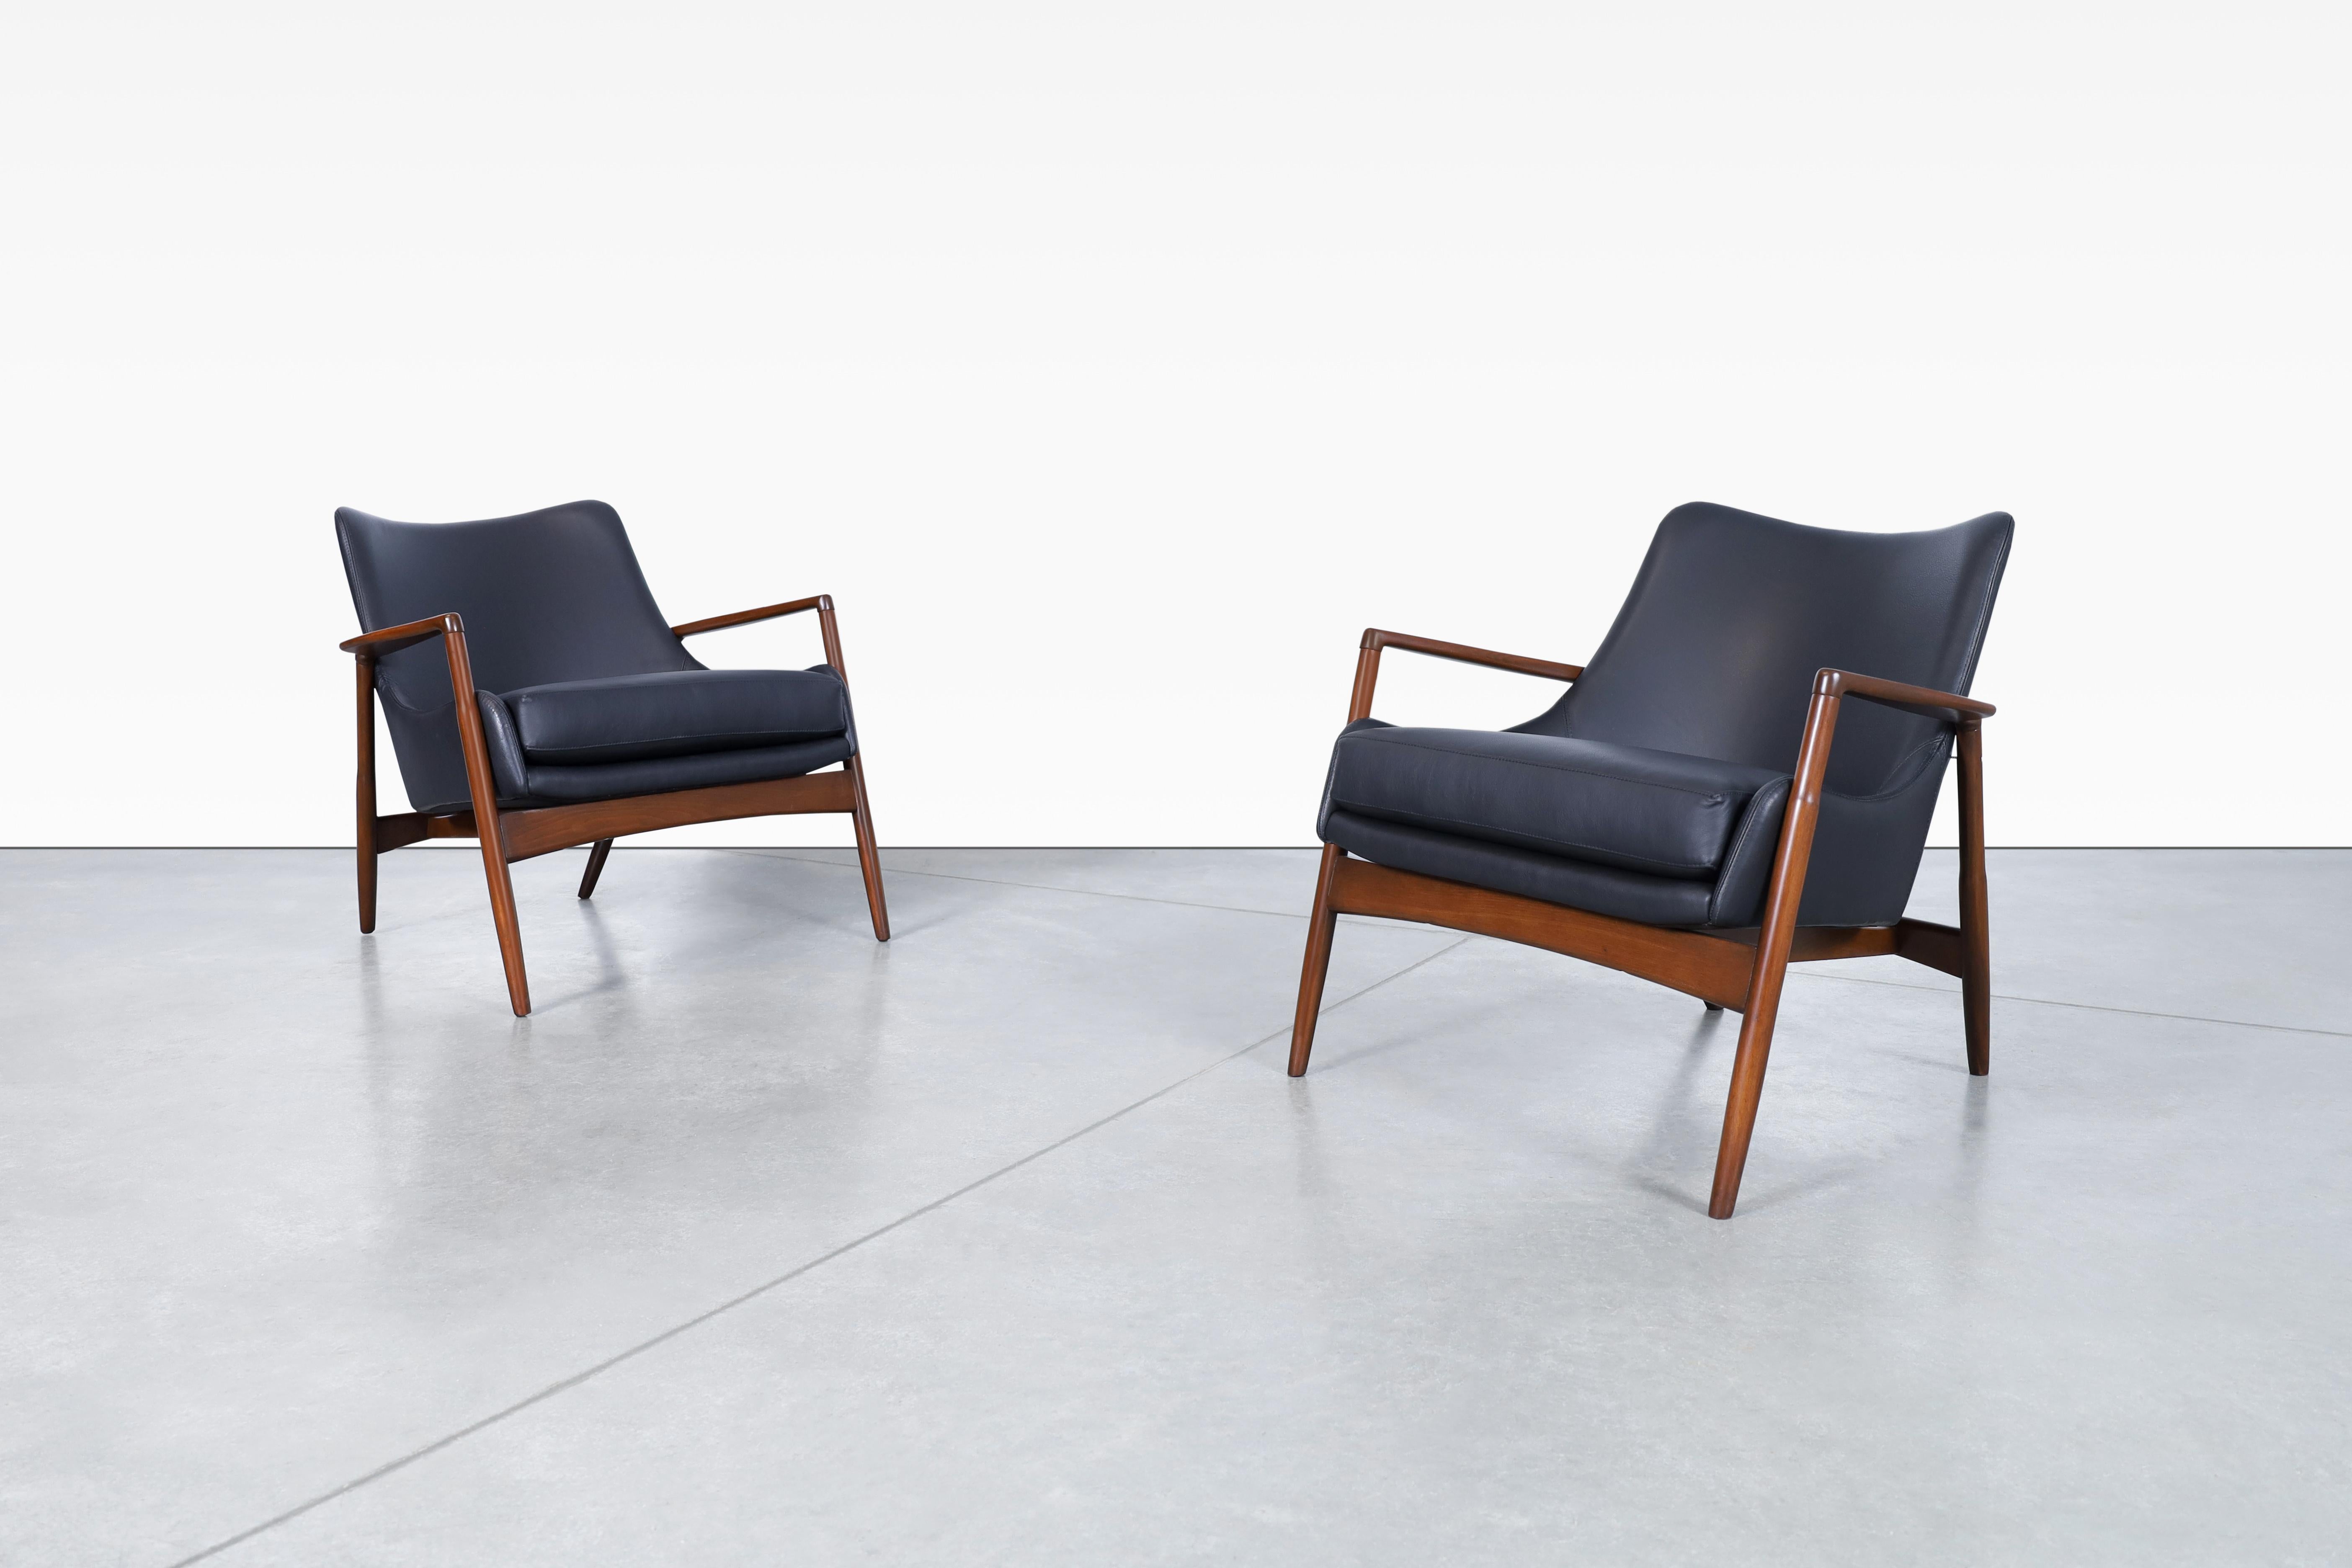 Wunderschöne moderne dänische Ledersessel von Ib Kofod Larsen für Selig in Dänemark, ca. 1950er Jahre. Die skulpturalen Rahmen dieser Stühle sind aus massivem, gebeiztem Nussbaumholz gefertigt. Die gut verarbeiteten Armlehnen und das tonnenförmige